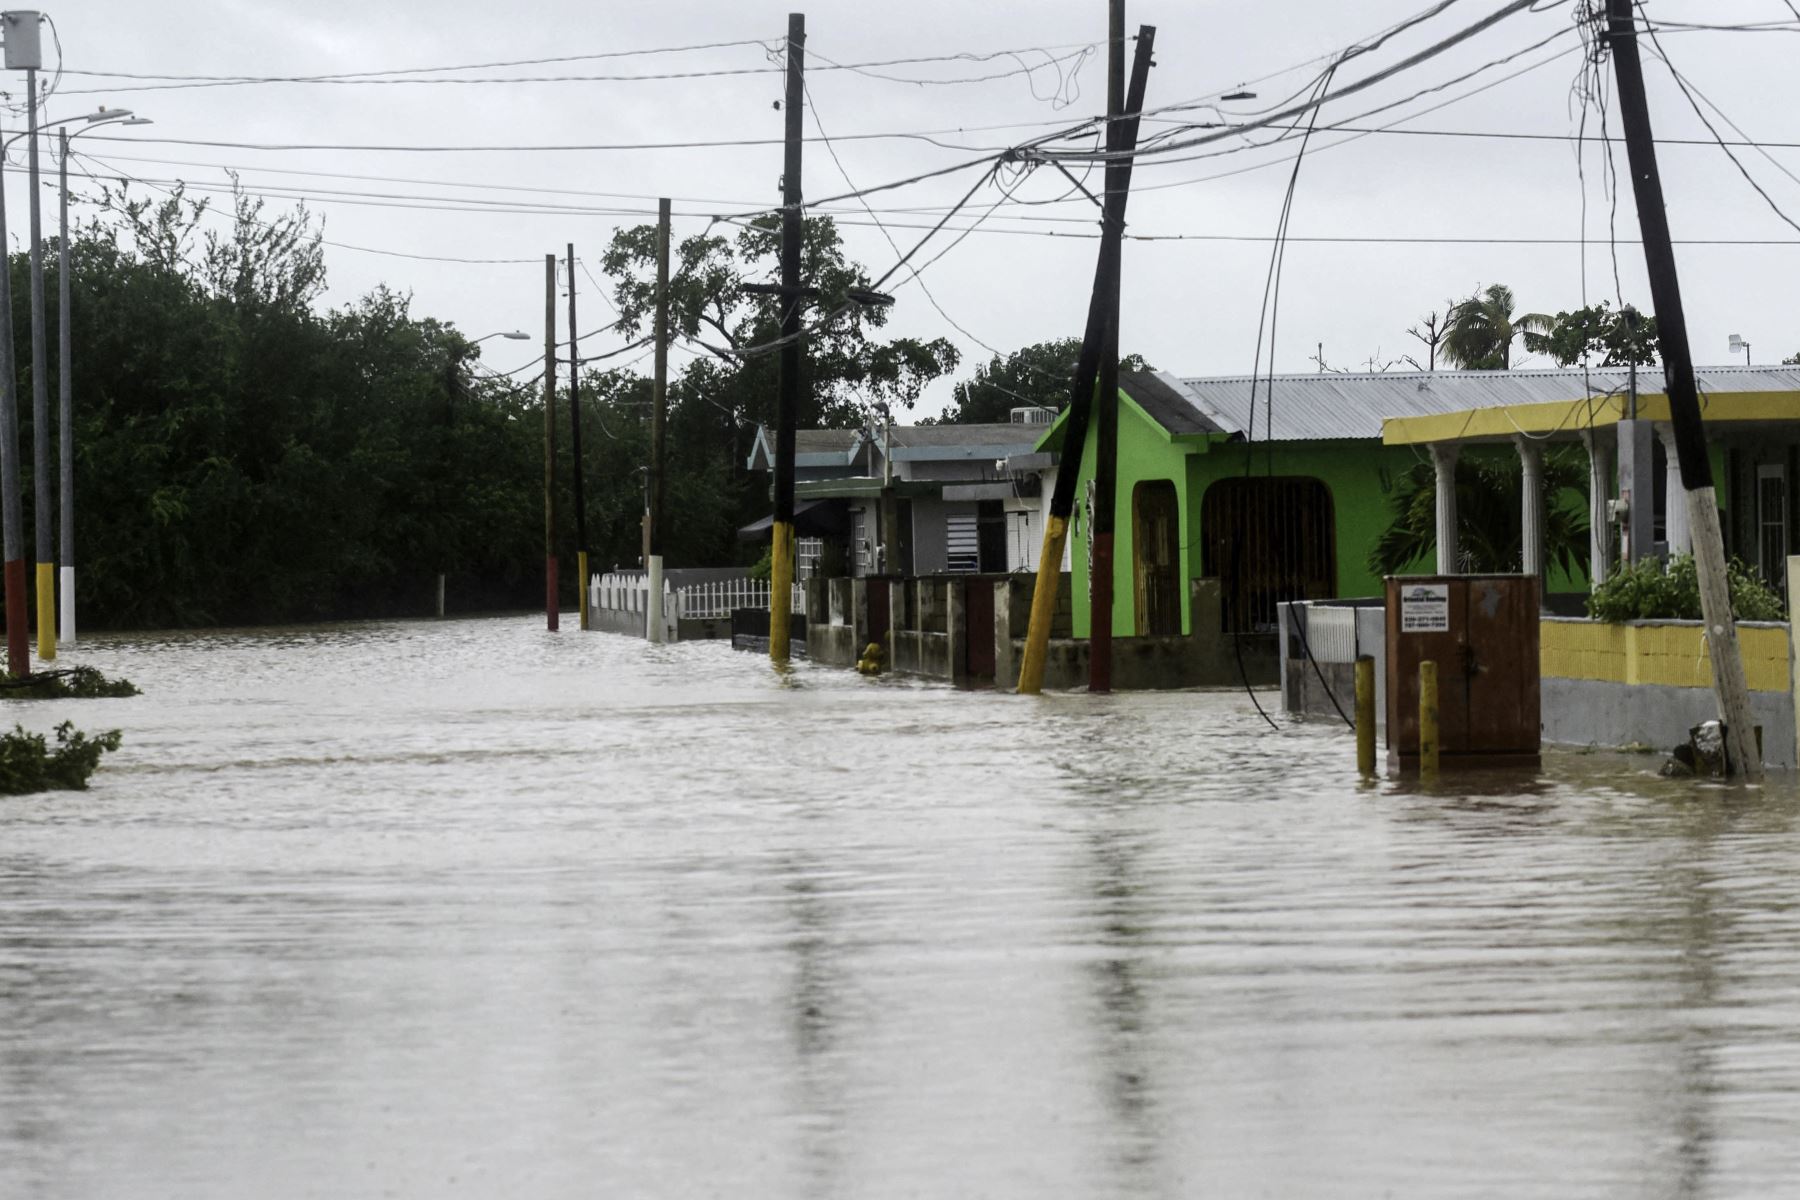 Se ve una calle inundada después del paso del huracán Fiona en Salinas, Puerto Rico. El huracán Fiona se estrelló contra Puerto Rico, cortando el suministro eléctrico del territorio de la isla estadounidense mientras arrojaba lluvias torrenciales y causaba daños catastróficos antes de tocar tierra en el República Dominicana.
Foto: AFP